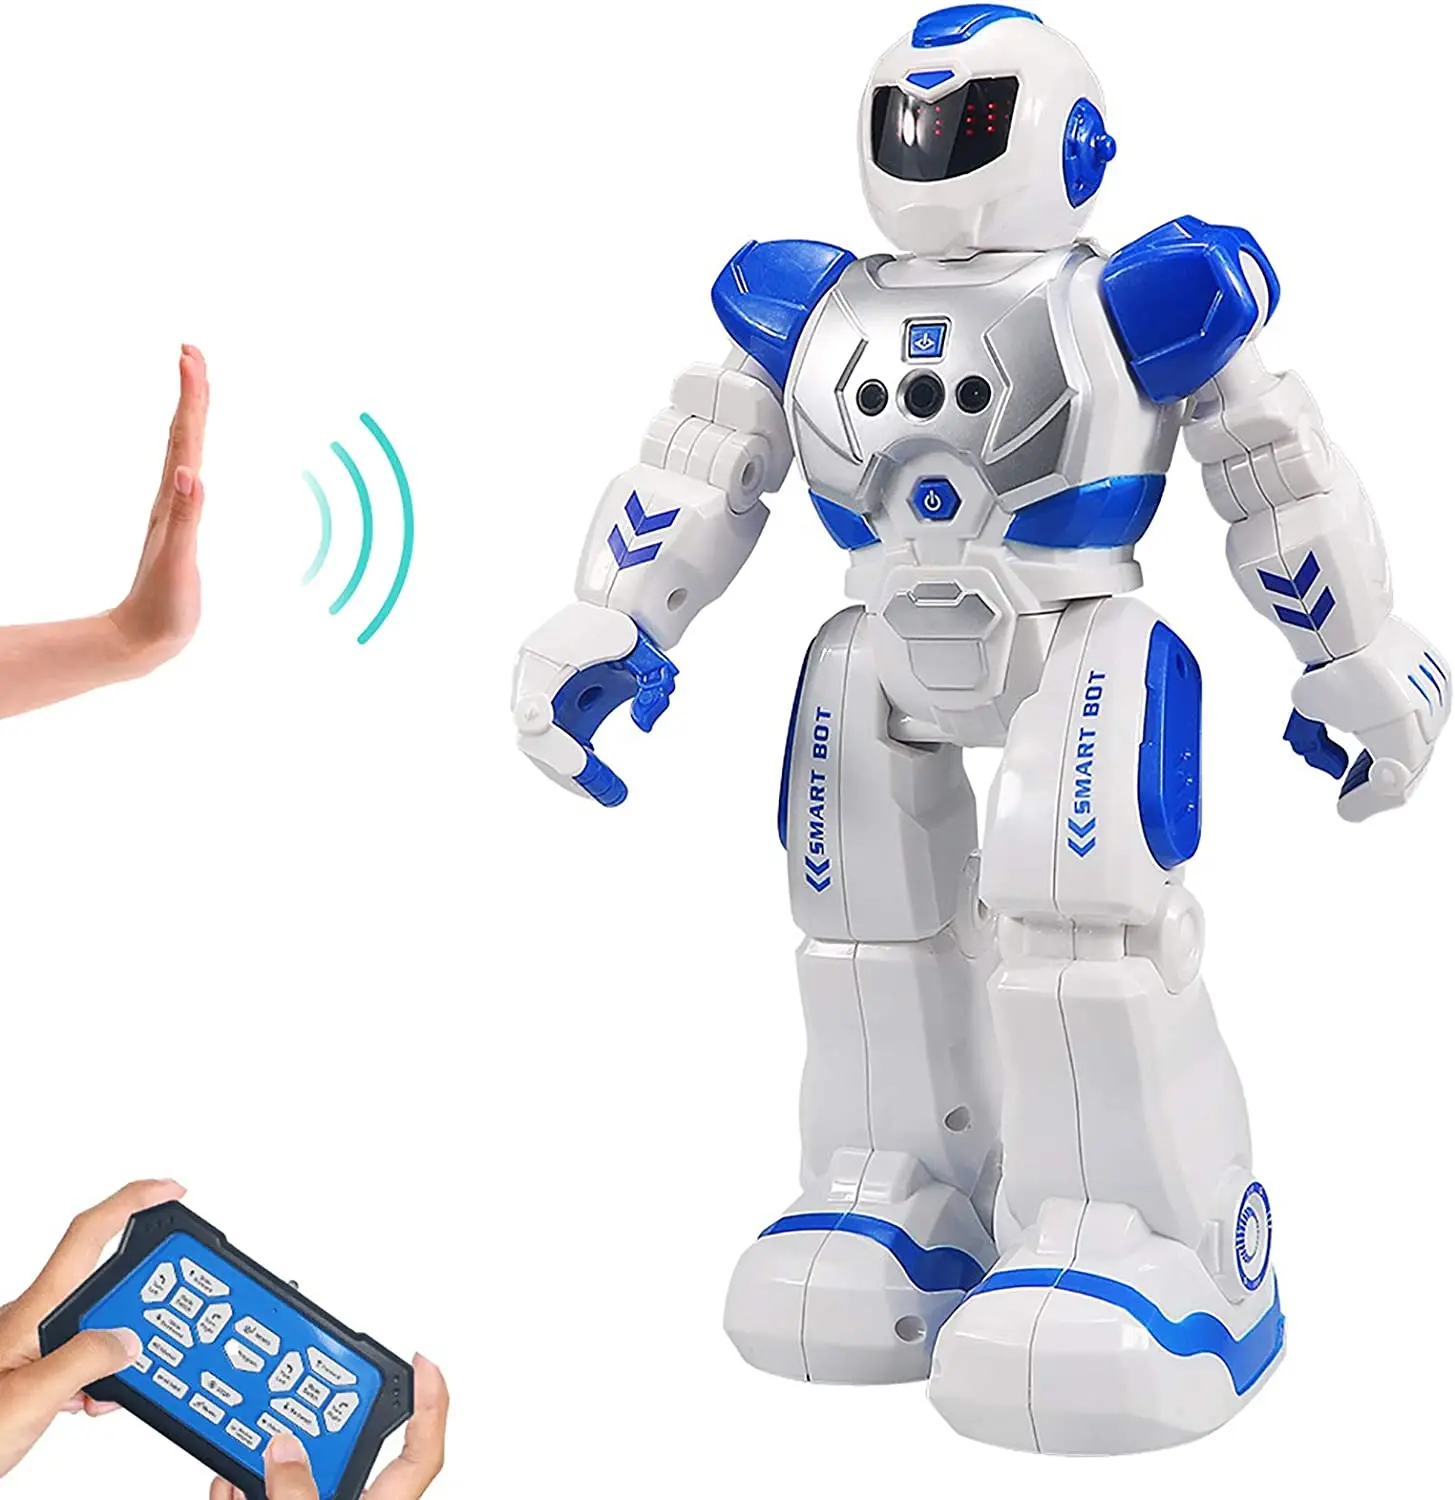 الجدل مسح الطول  روبوت للأطفال بتقنية الذكاء الاصطناعي 2021,روبوت للأطفال ذكي قابل للبرمجة  مع ألعاب تحكم بالأشعة تحت الحمراء ، والرقص ، والغناء ، وعيون Led - Buy Rc  روبوت,برمجة الروبوت,لعبة روبوت Product on Alibaba.com